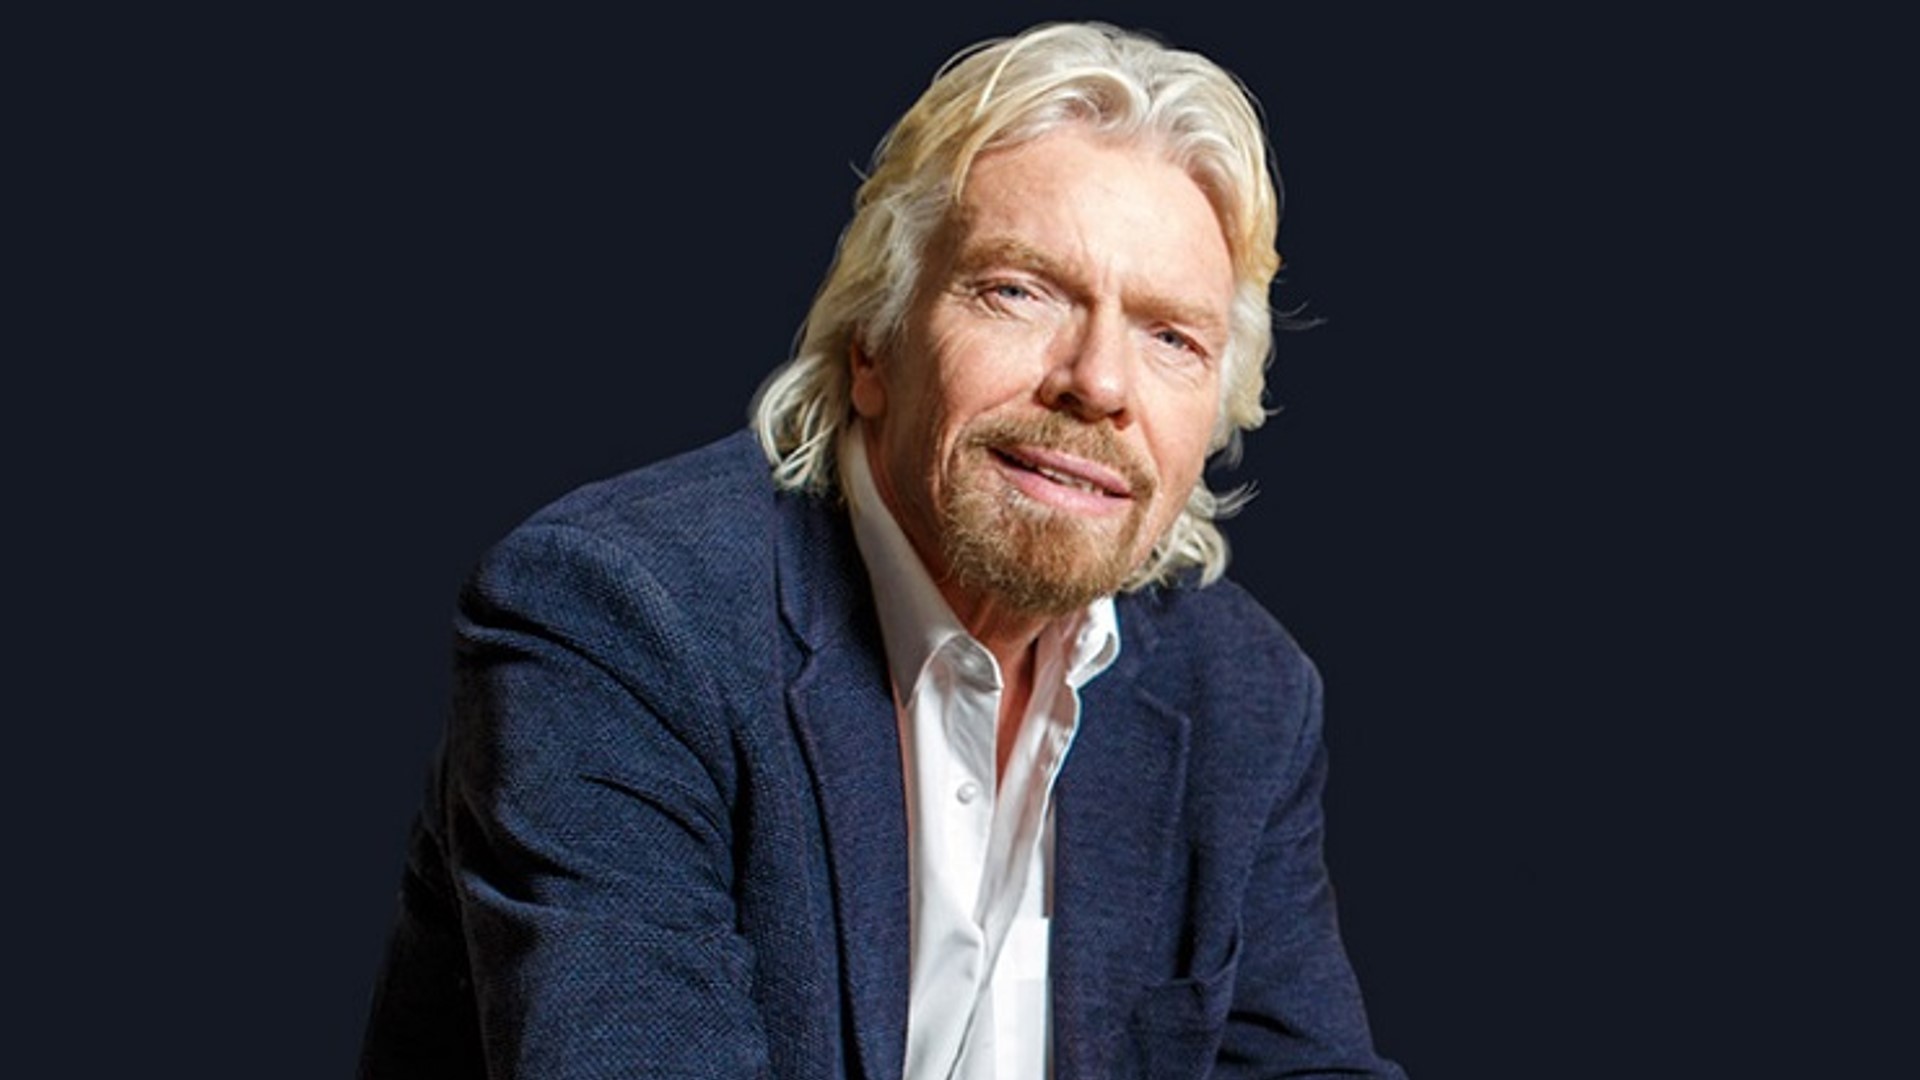 HC人物-Richard Branson： 白手起家的億萬富翁 – 瘋狂、創新、永不止息的好奇心與冒險精神